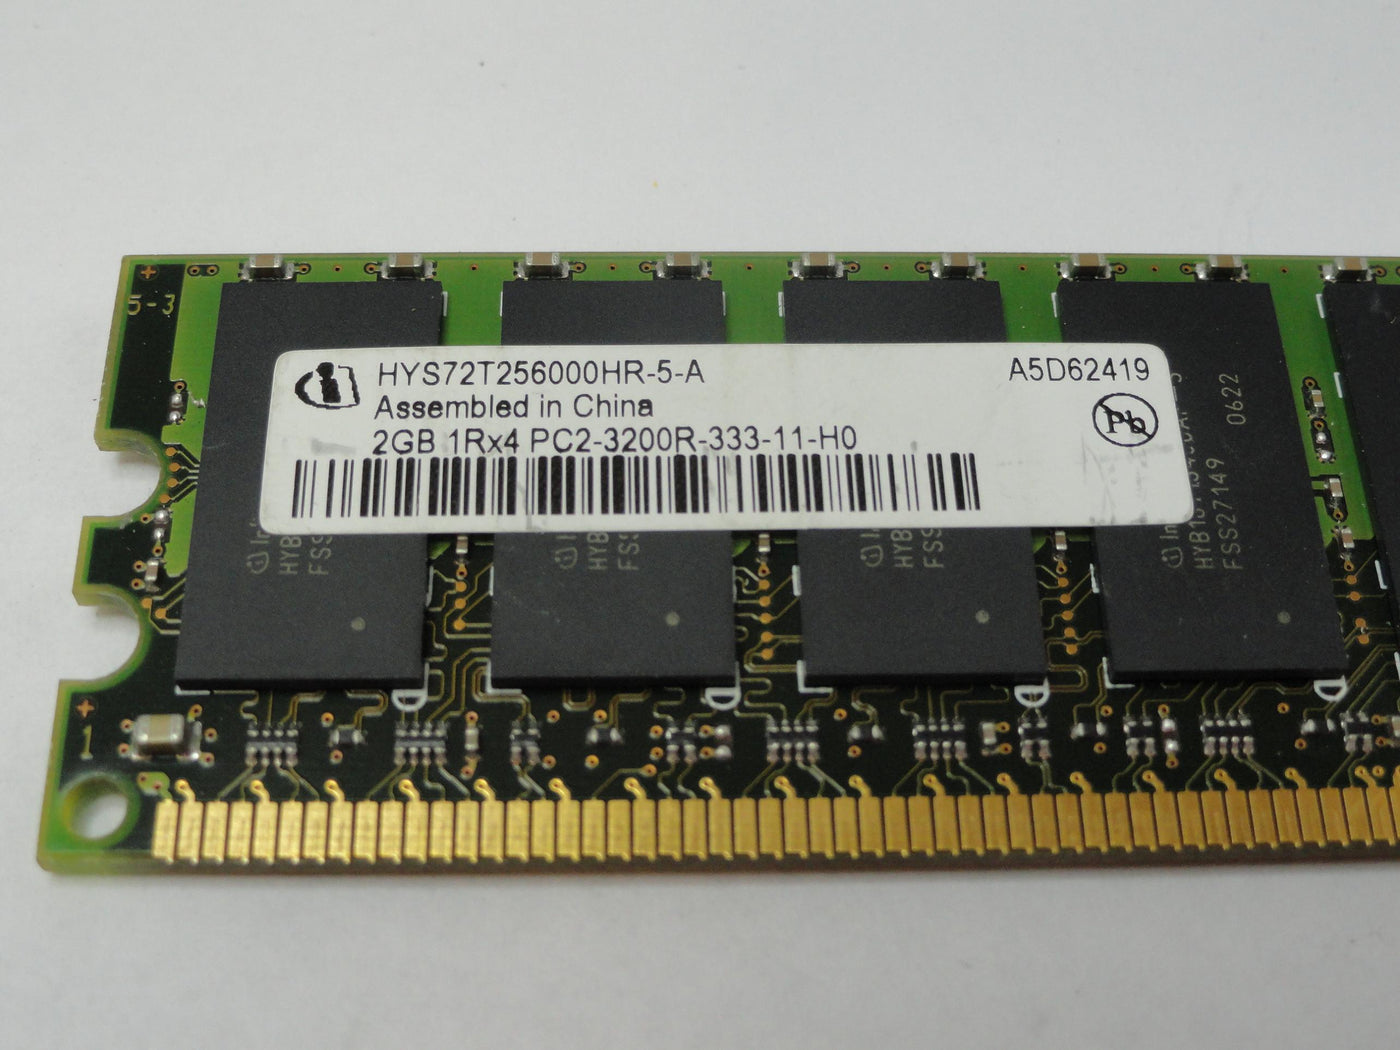 PC2-3200R-333-11-H0 - Infineon 2GB 240p PC2-3200 CL3 18c 256x4 DDR2-400 1Rx4 1.8V ECC RDIMM Memory Module - NEW